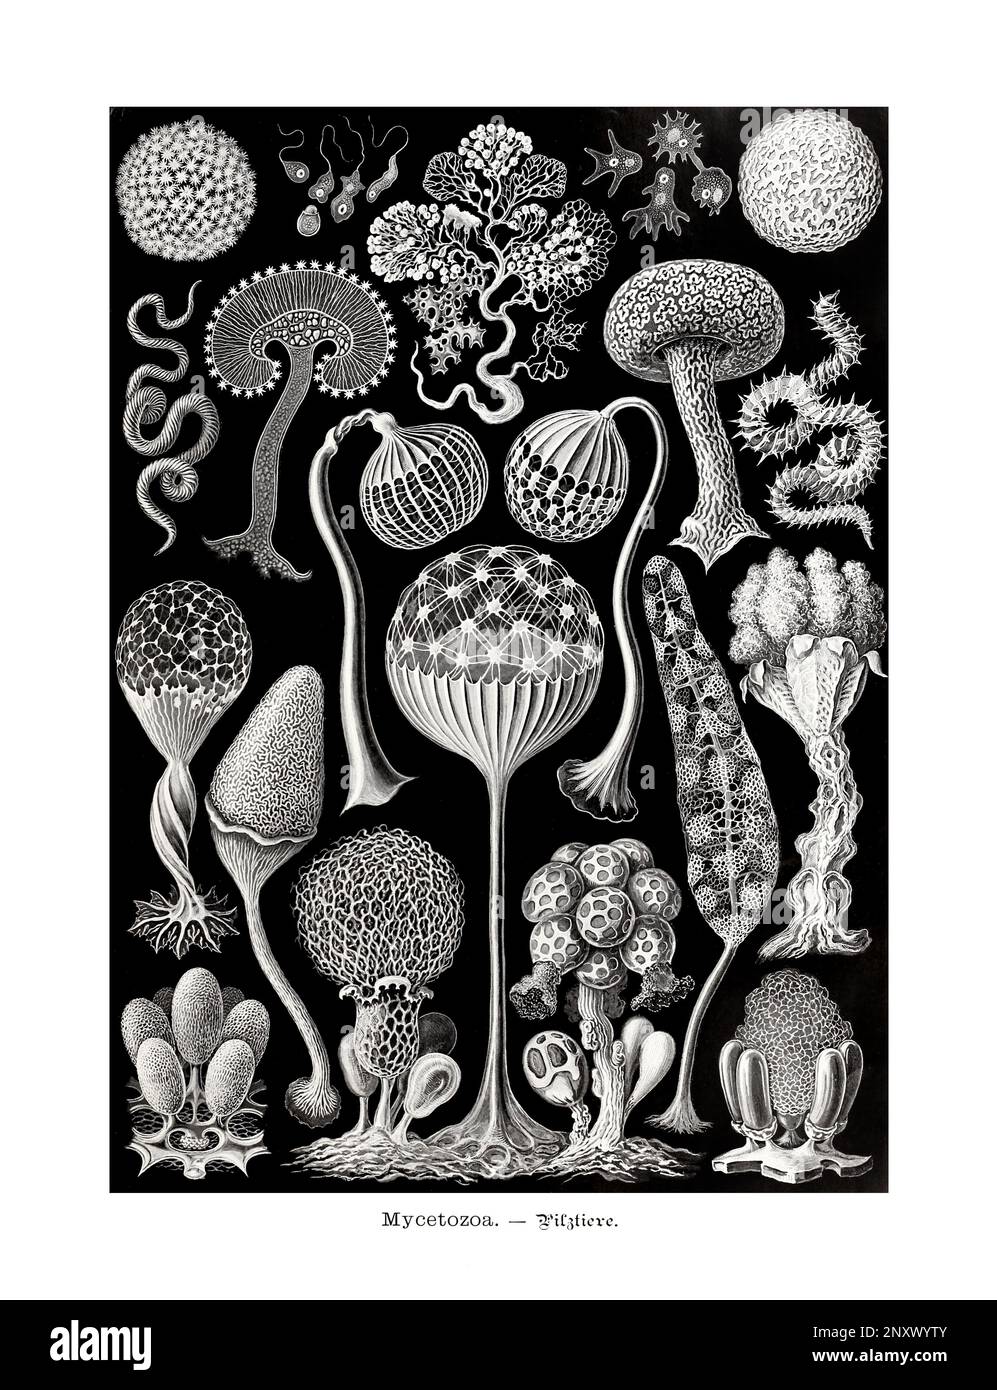 ERNST HAECKEL ART - Mycetozoa, Schleimformen - 19. Jahrhundert - Antike zoologische Illustration - Illustrationen des Buches : "Kunstformen in der Natur" Stockfoto